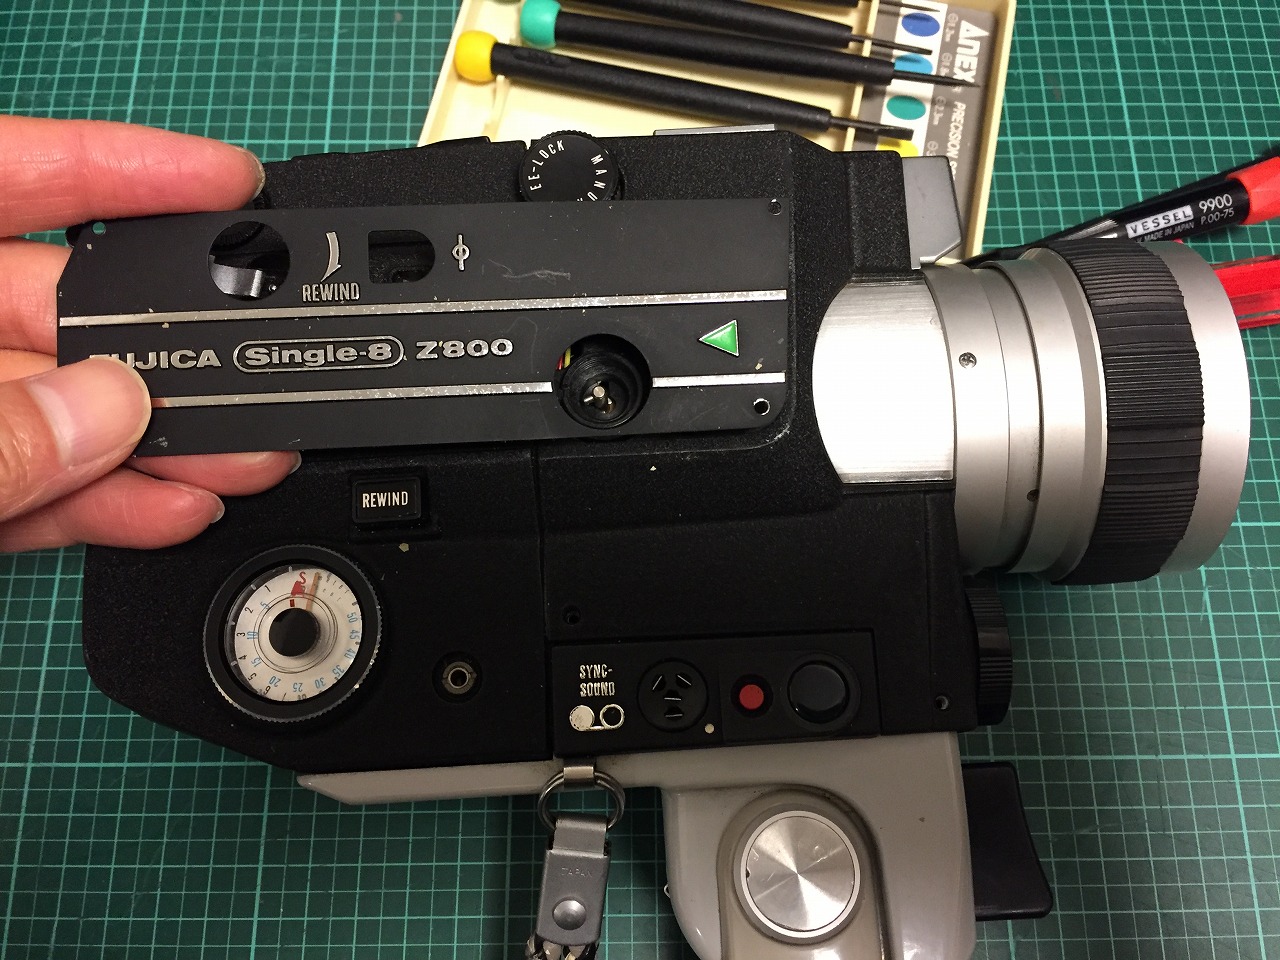 Fujica Z800 single 8 シングル8 フィルムカメラ